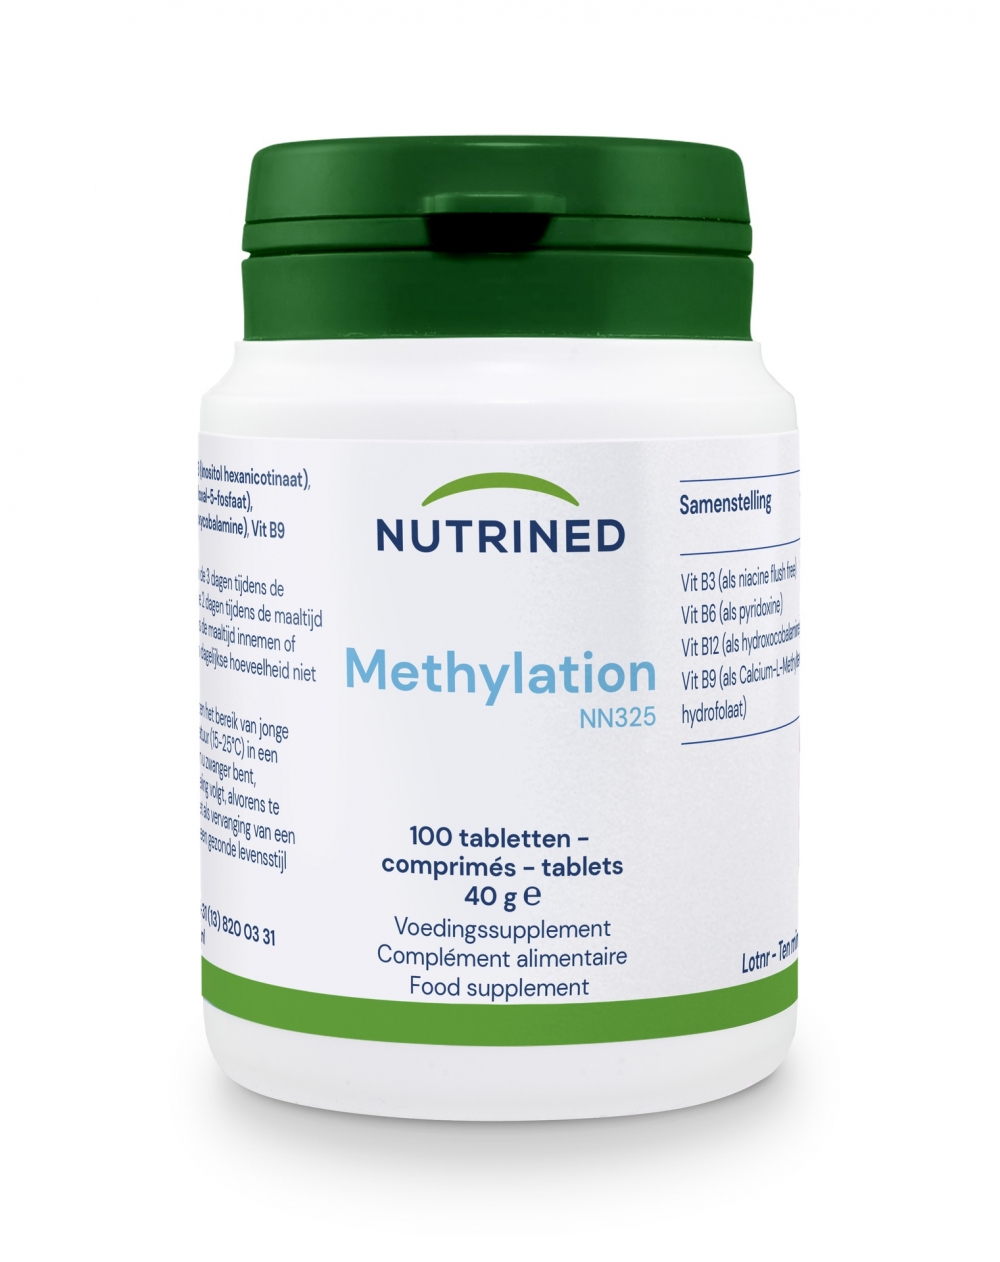 Methylation fra Nutrined innholder det du trenger for å forbedre din metylering.